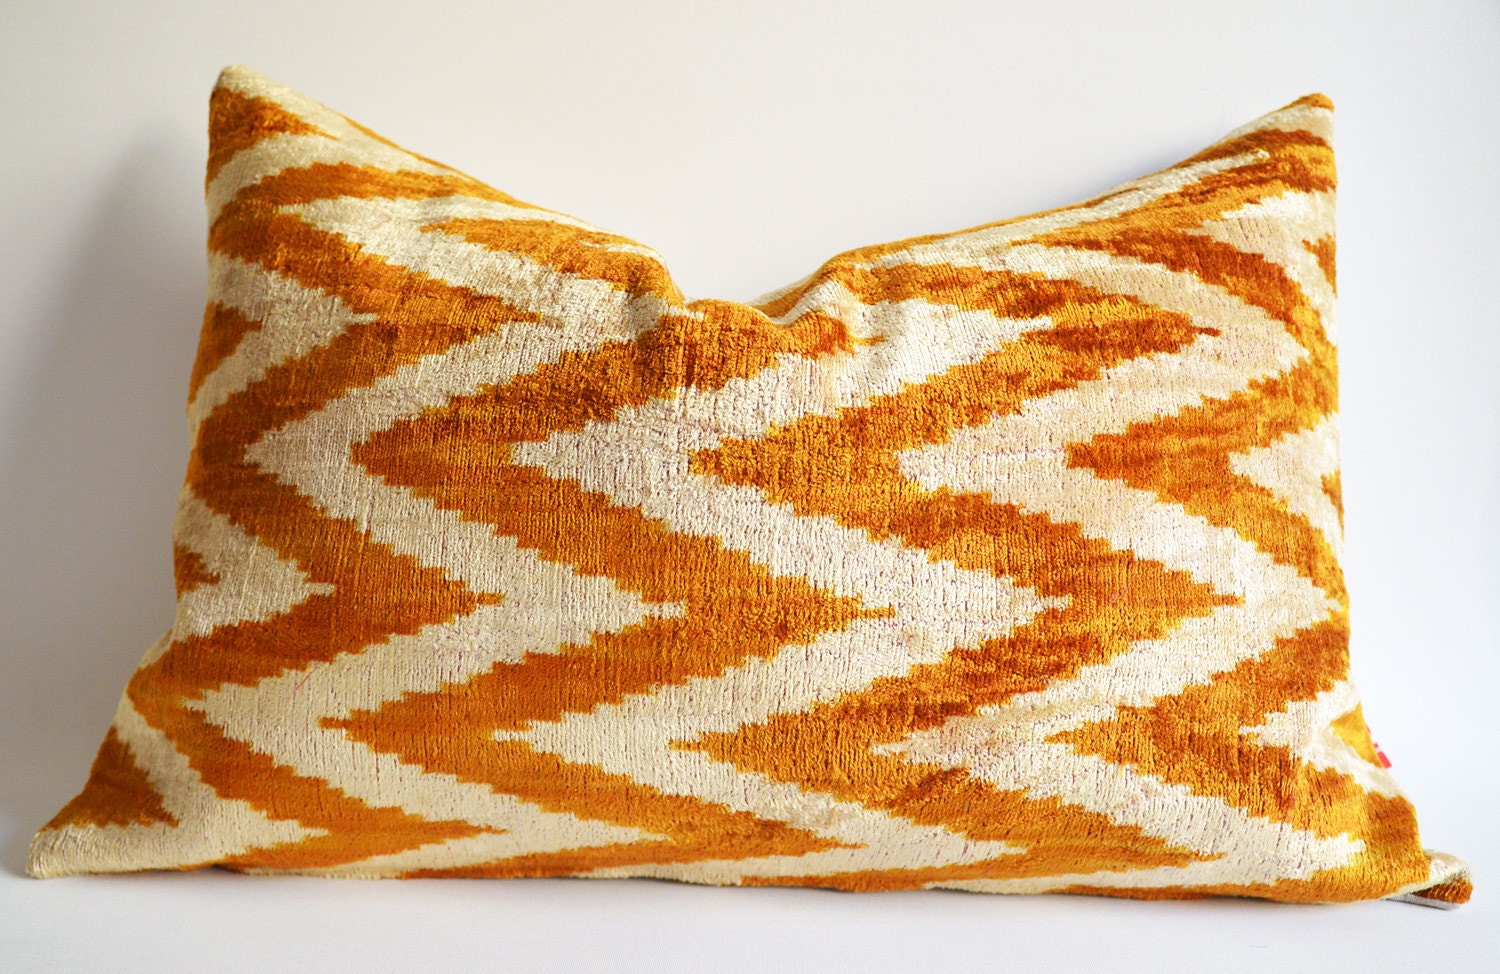 Sukan / Silk Velvet Ikat Pillow Cover, Lumbar Pillow - Decorative Ikat Throw Pillow Cover - Decorative Pillows - Beige, Gold Mustard